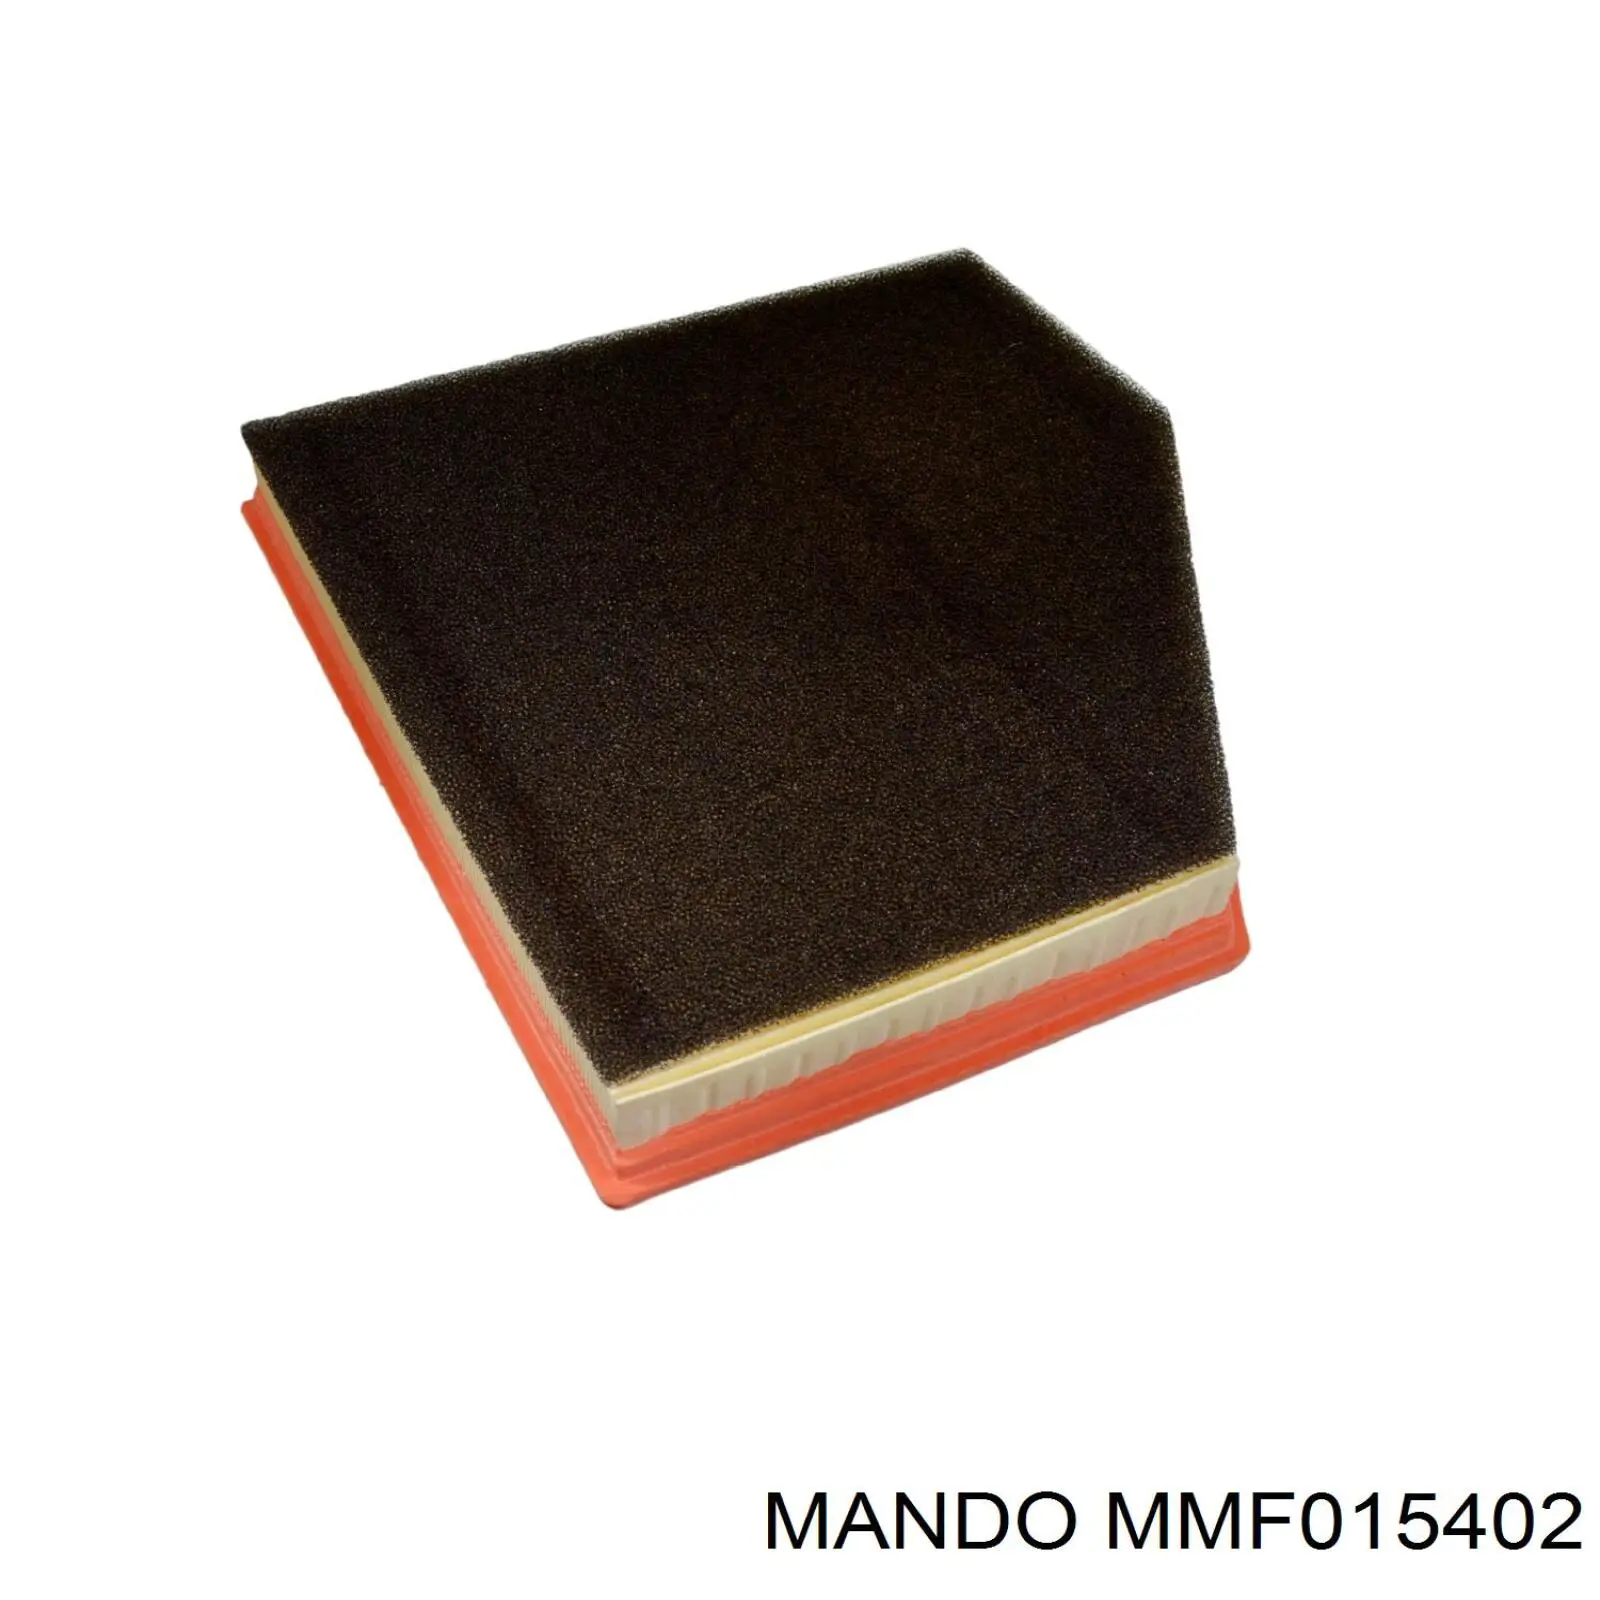 MMF015402 Mando фільтр повітряний